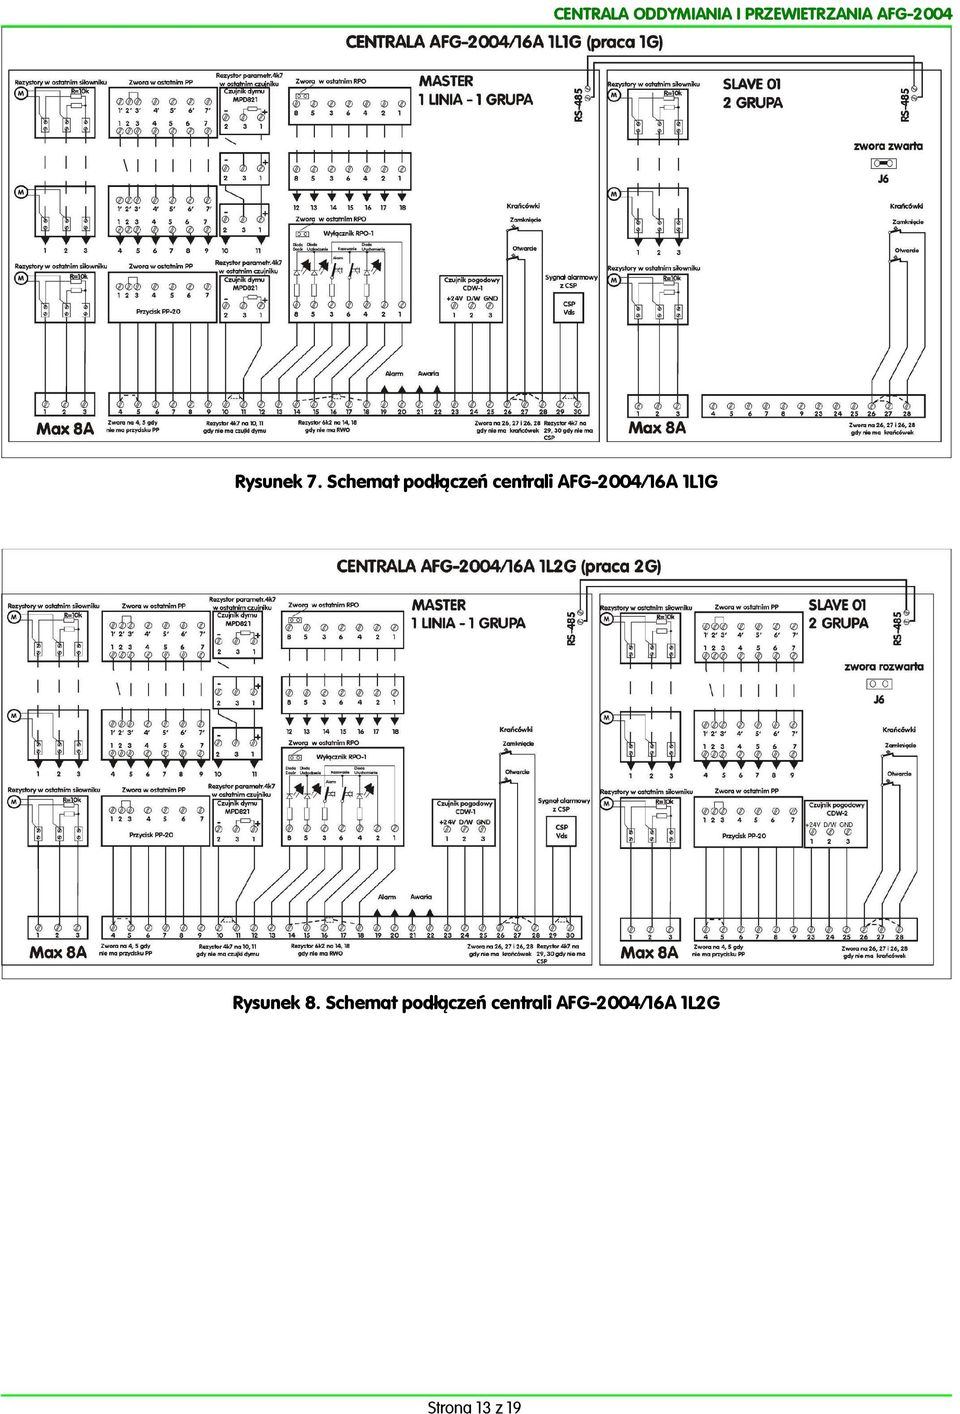 Schemat podłączeń centrali AFG004/6A